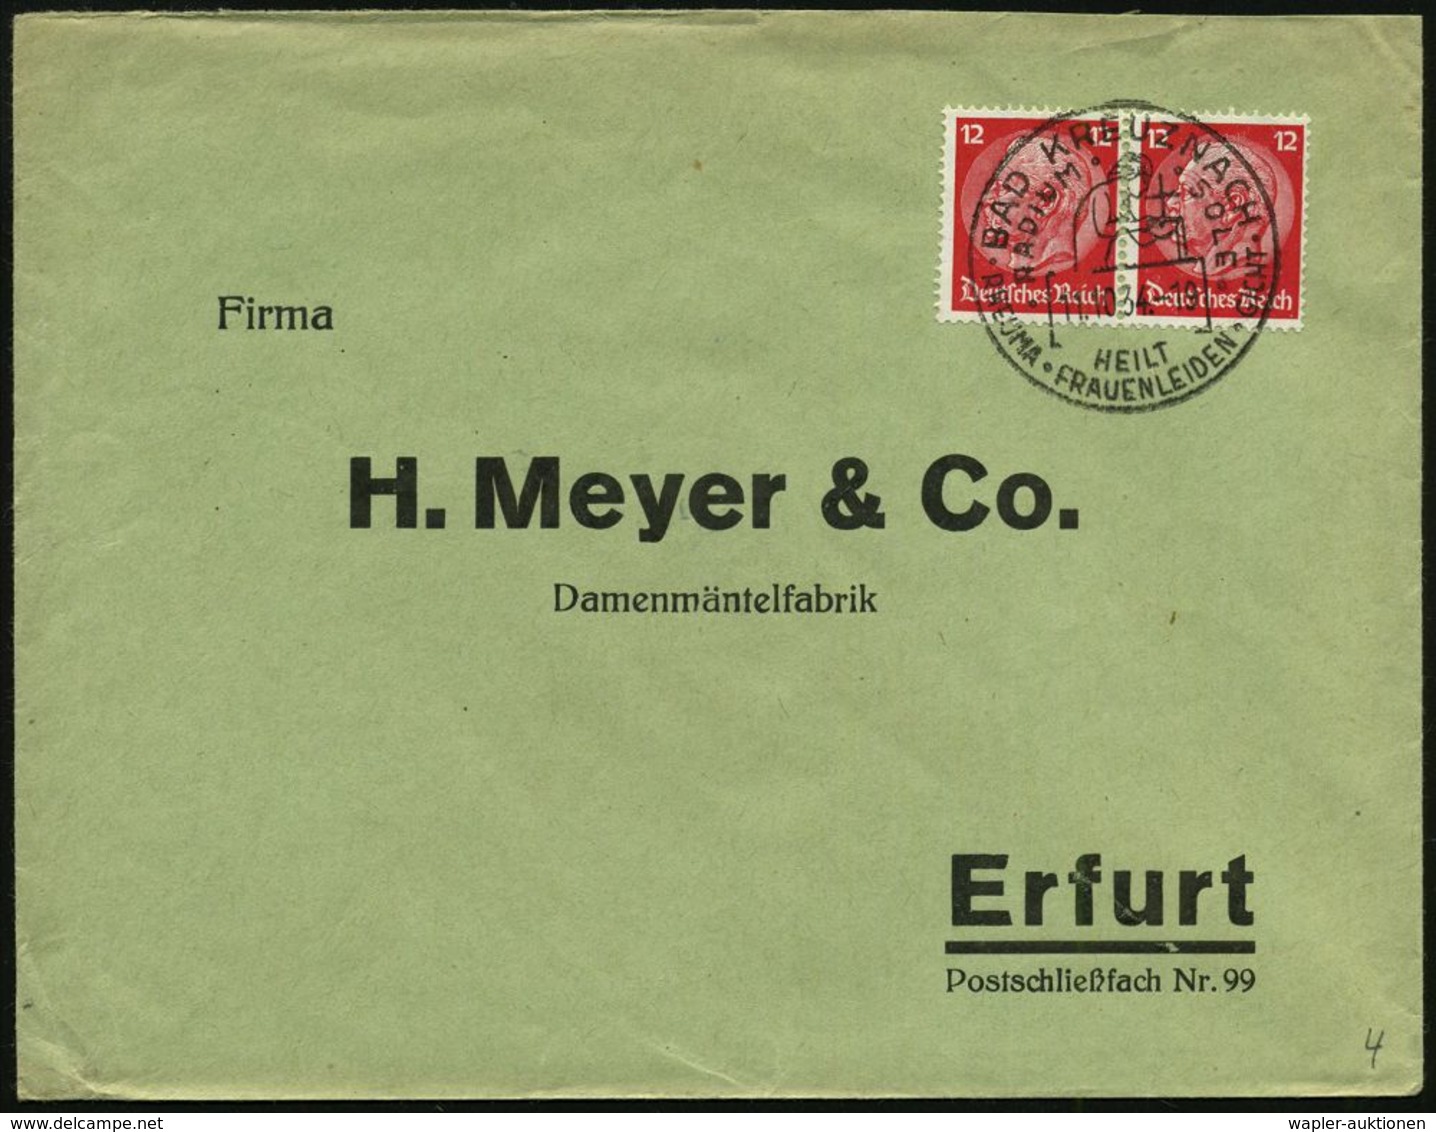 RHEUMATISMUS : BAD KREUZNACH/ RADIUM SOLE/ HEILT/ RHEUMA-FRAUENLEIDEN-GICHT 1934 (11.10.) Seltener HWSt (Frau Mit Kreuz- - Maladies